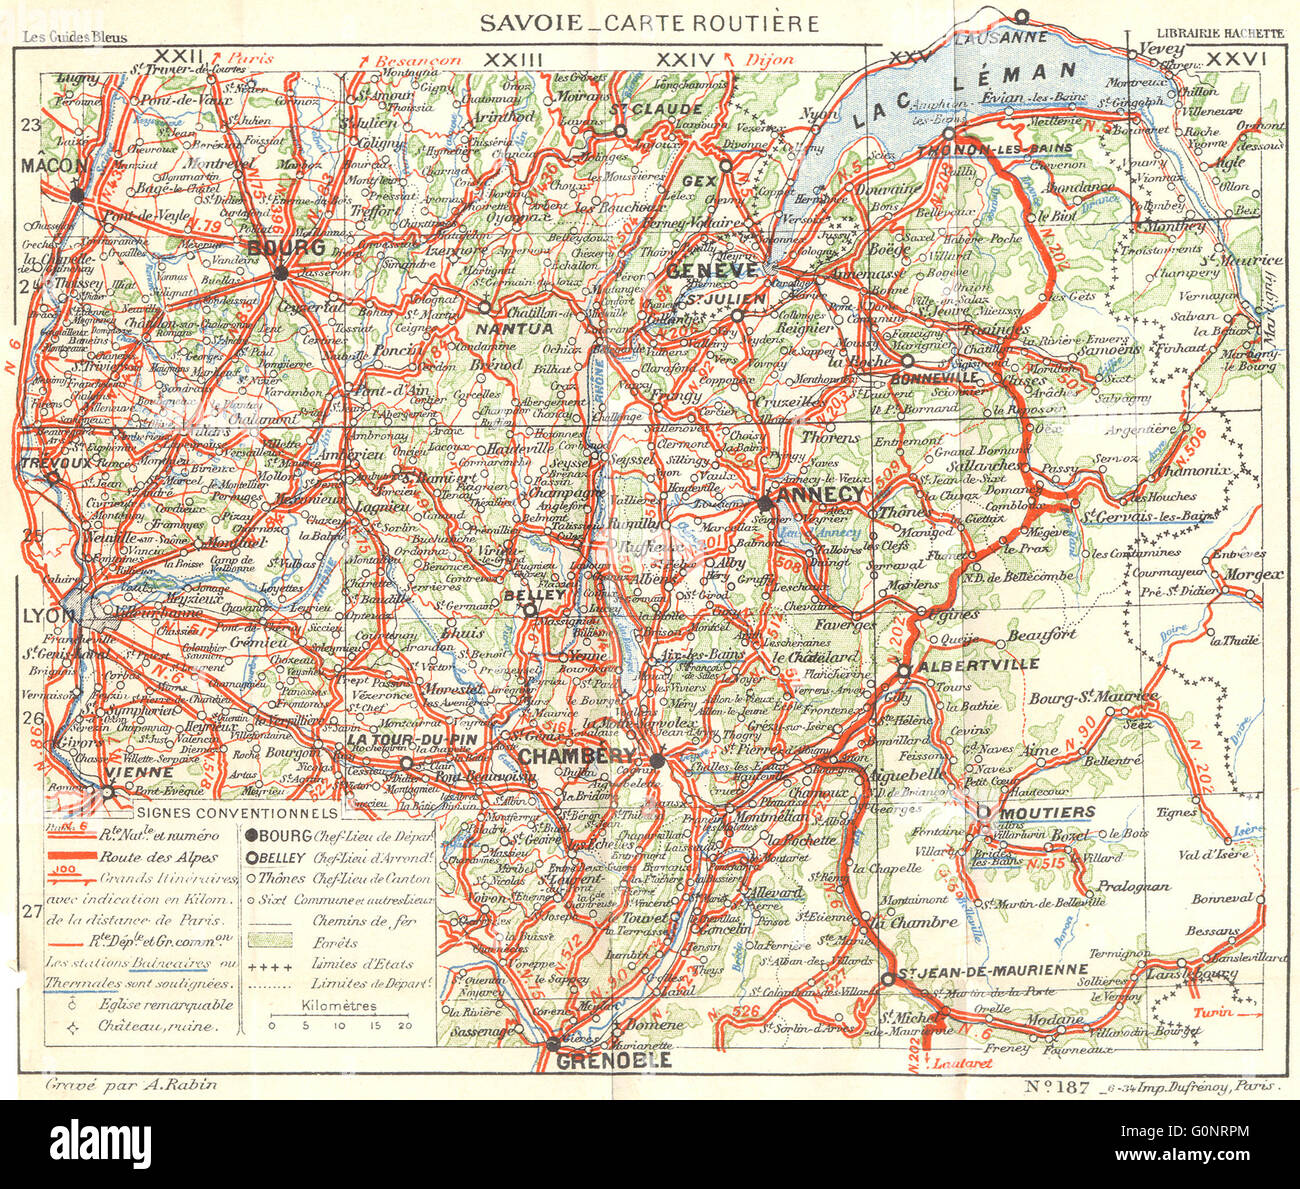 carte routiere de la savoie SAVOIE: Carte Routiere, 1934 vintage map Stock Photo   Alamy